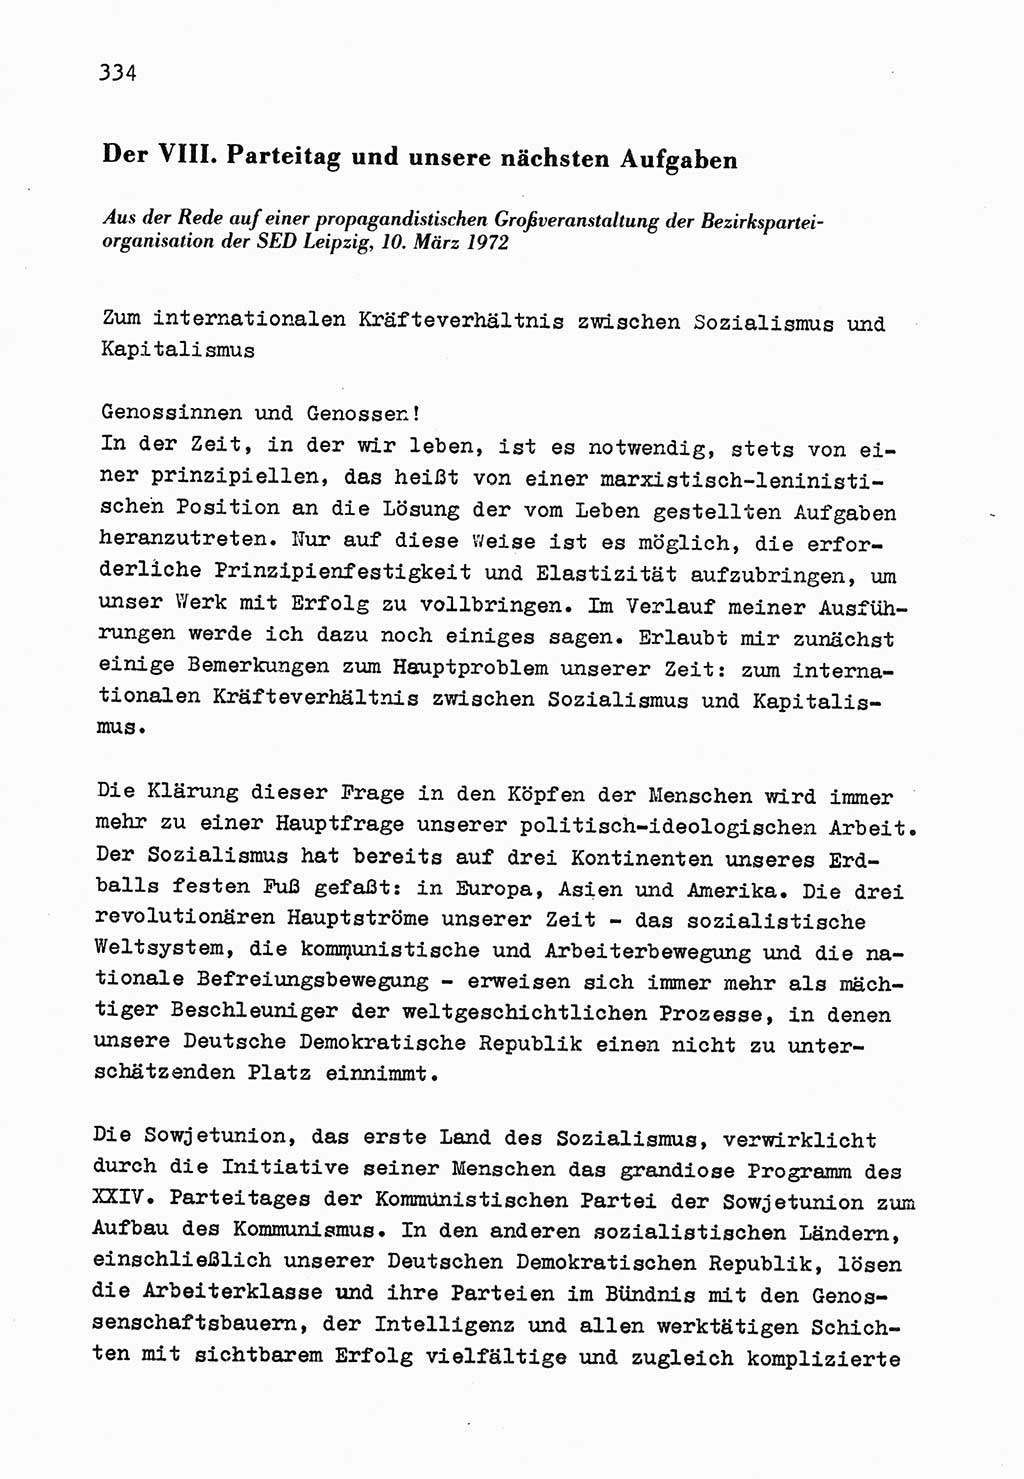 Zu Fragen der Parteiarbeit [Sozialistische Einheitspartei Deutschlands (SED) Deutsche Demokratische Republik (DDR)] 1979, Seite 334 (Fr. PA SED DDR 1979, S. 334)